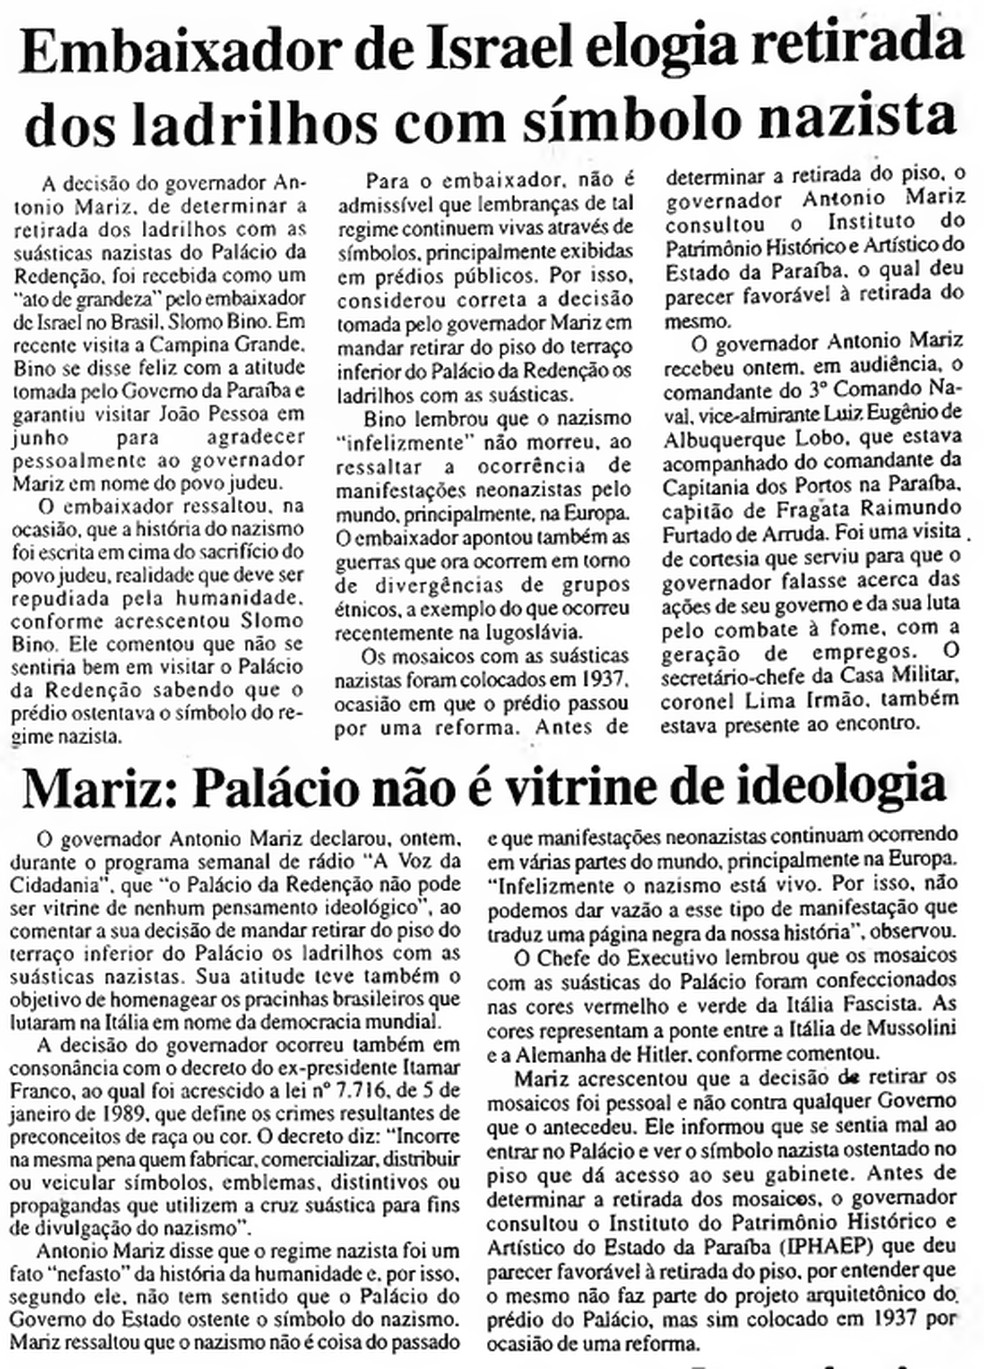 Em 1995, o embaixador de Israel elogiou a retirada dos ladrilhos com suástica — Foto: Reprodução/Jornal da Paraíba